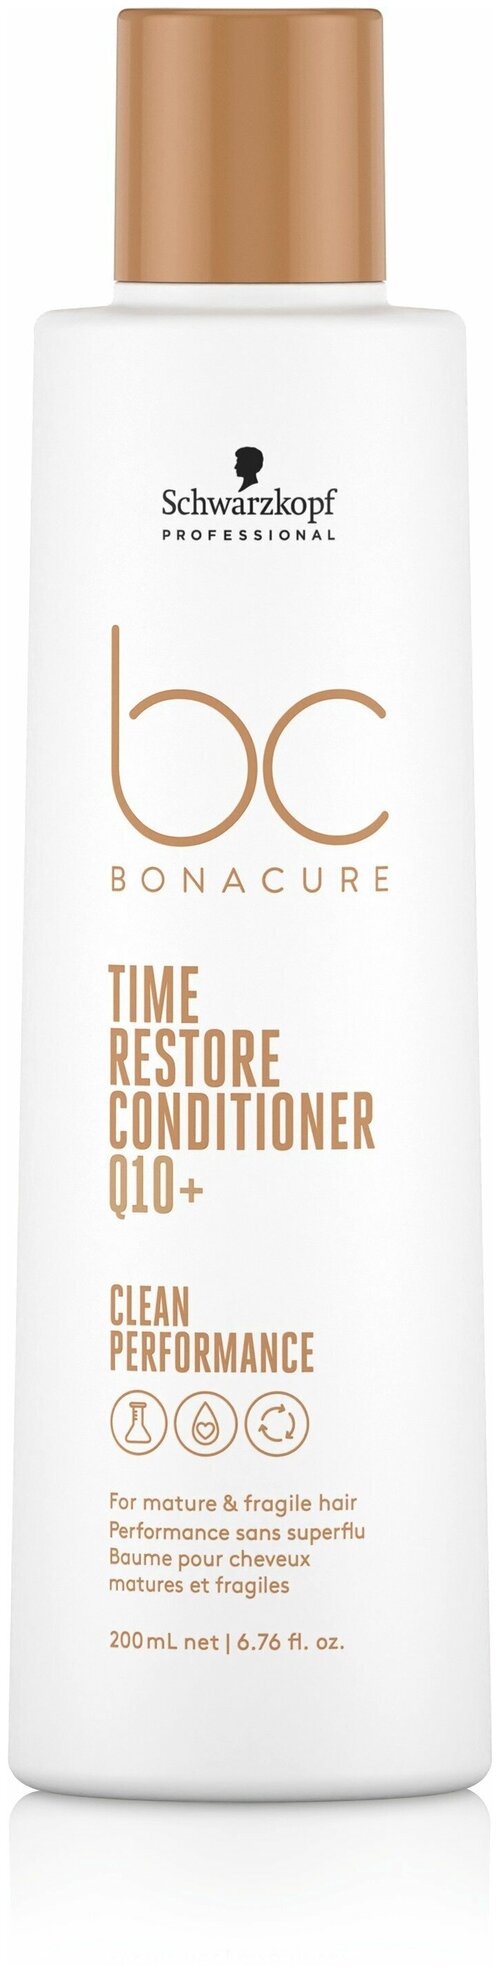 Кондиционер BONACURE TIME RESTORE для зрелых и длинных волос SCHWARZKOPF PROFESSIONAL 200 мл